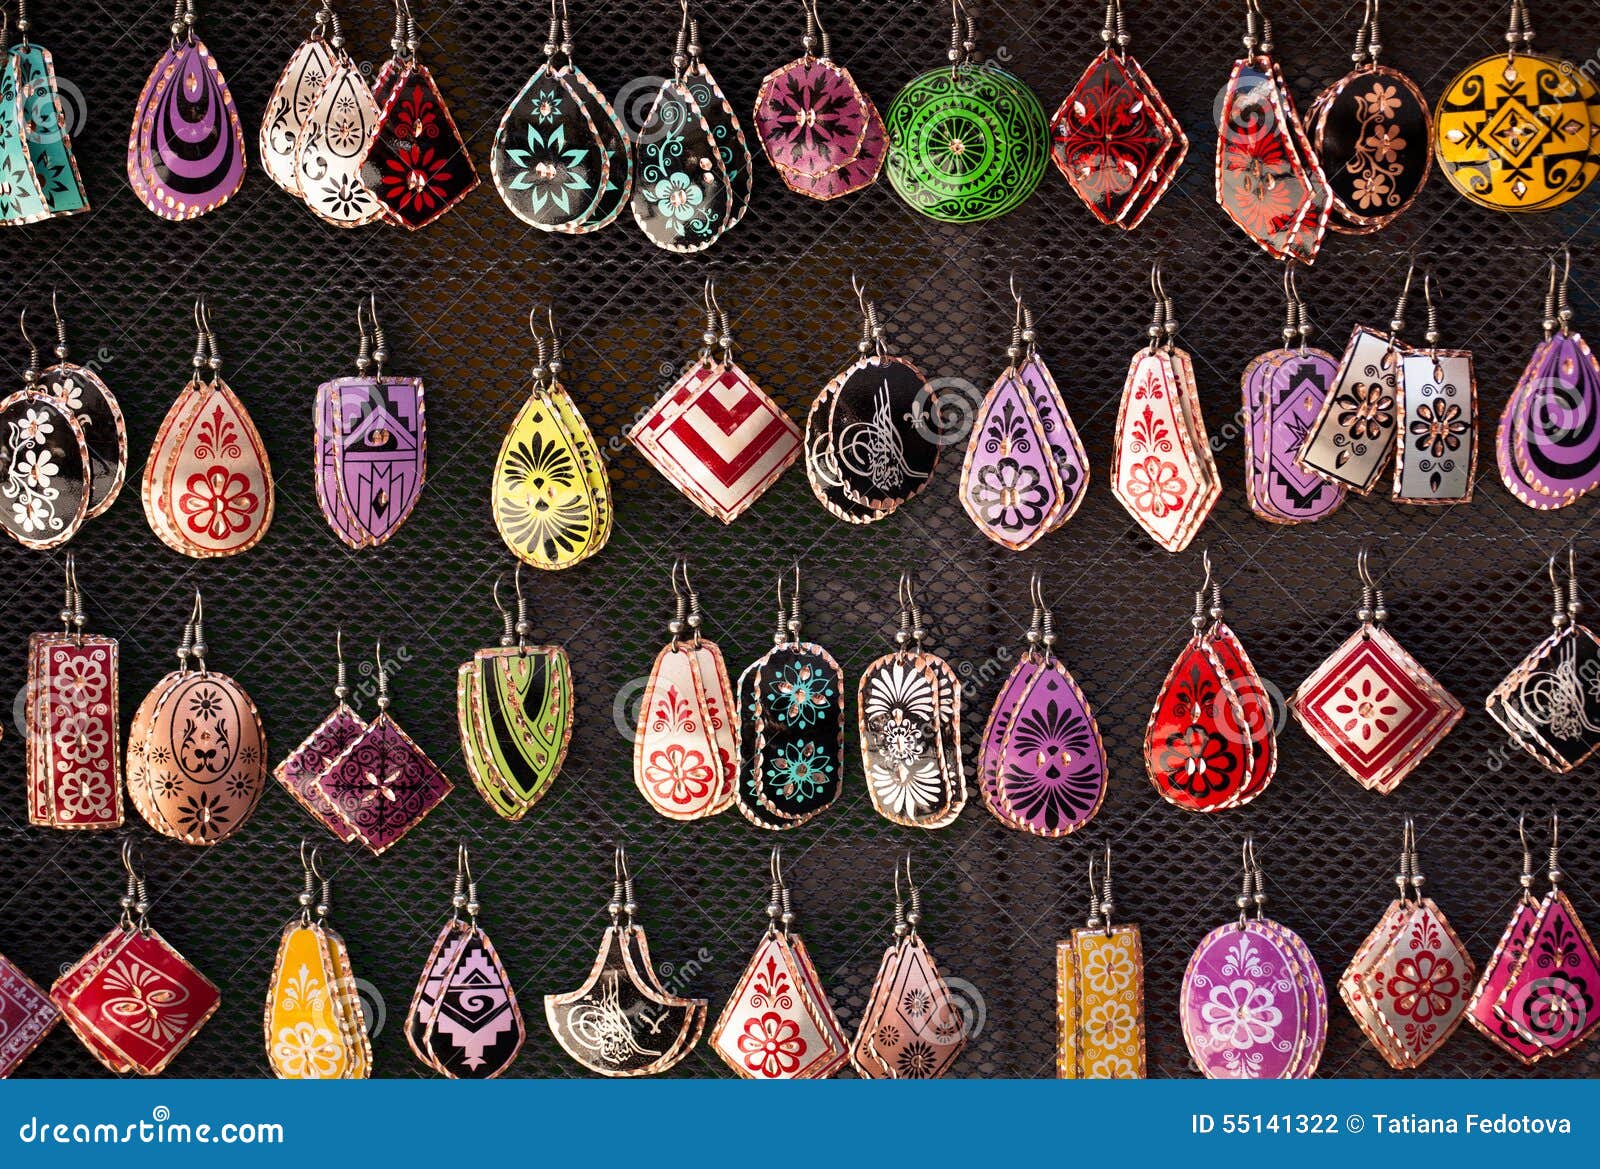 Earrings For Women - Buy Earrings For Women Online Starting at Just ₹103 |  Meesho